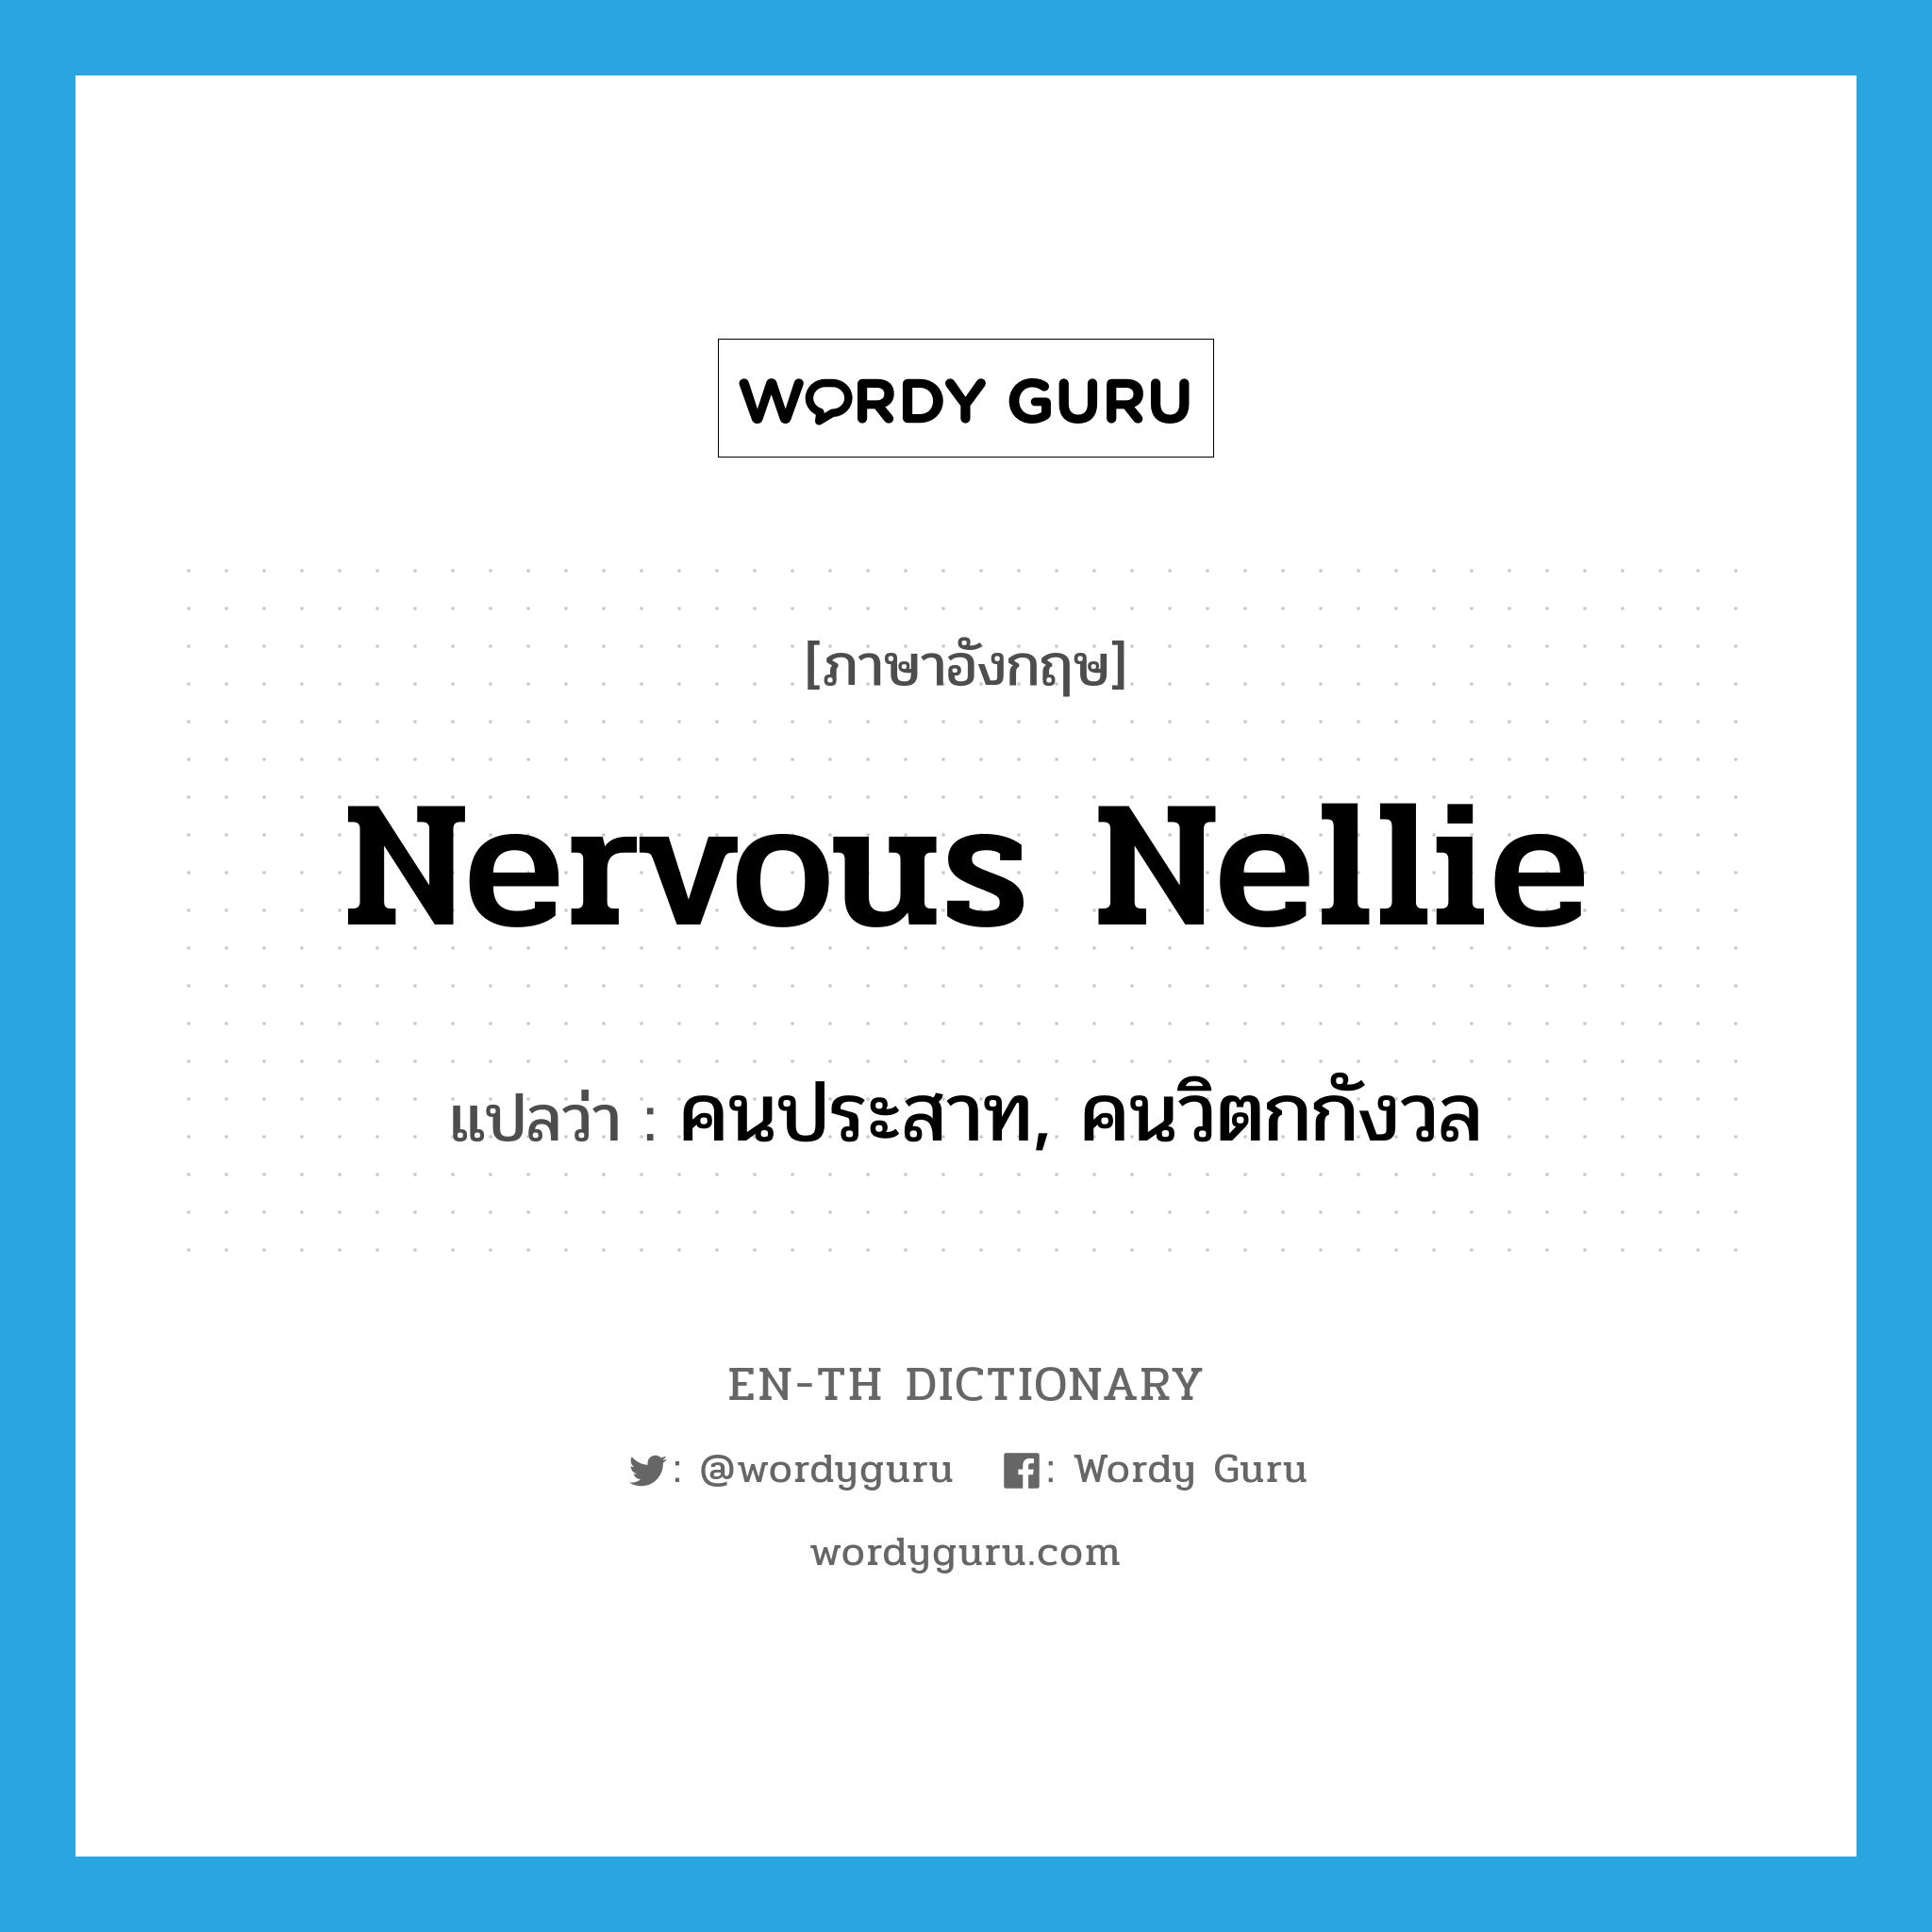 คนประสาท, คนวิตกกังวล ภาษาอังกฤษ?, คำศัพท์ภาษาอังกฤษ คนประสาท, คนวิตกกังวล แปลว่า nervous Nellie ประเภท SL หมวด SL